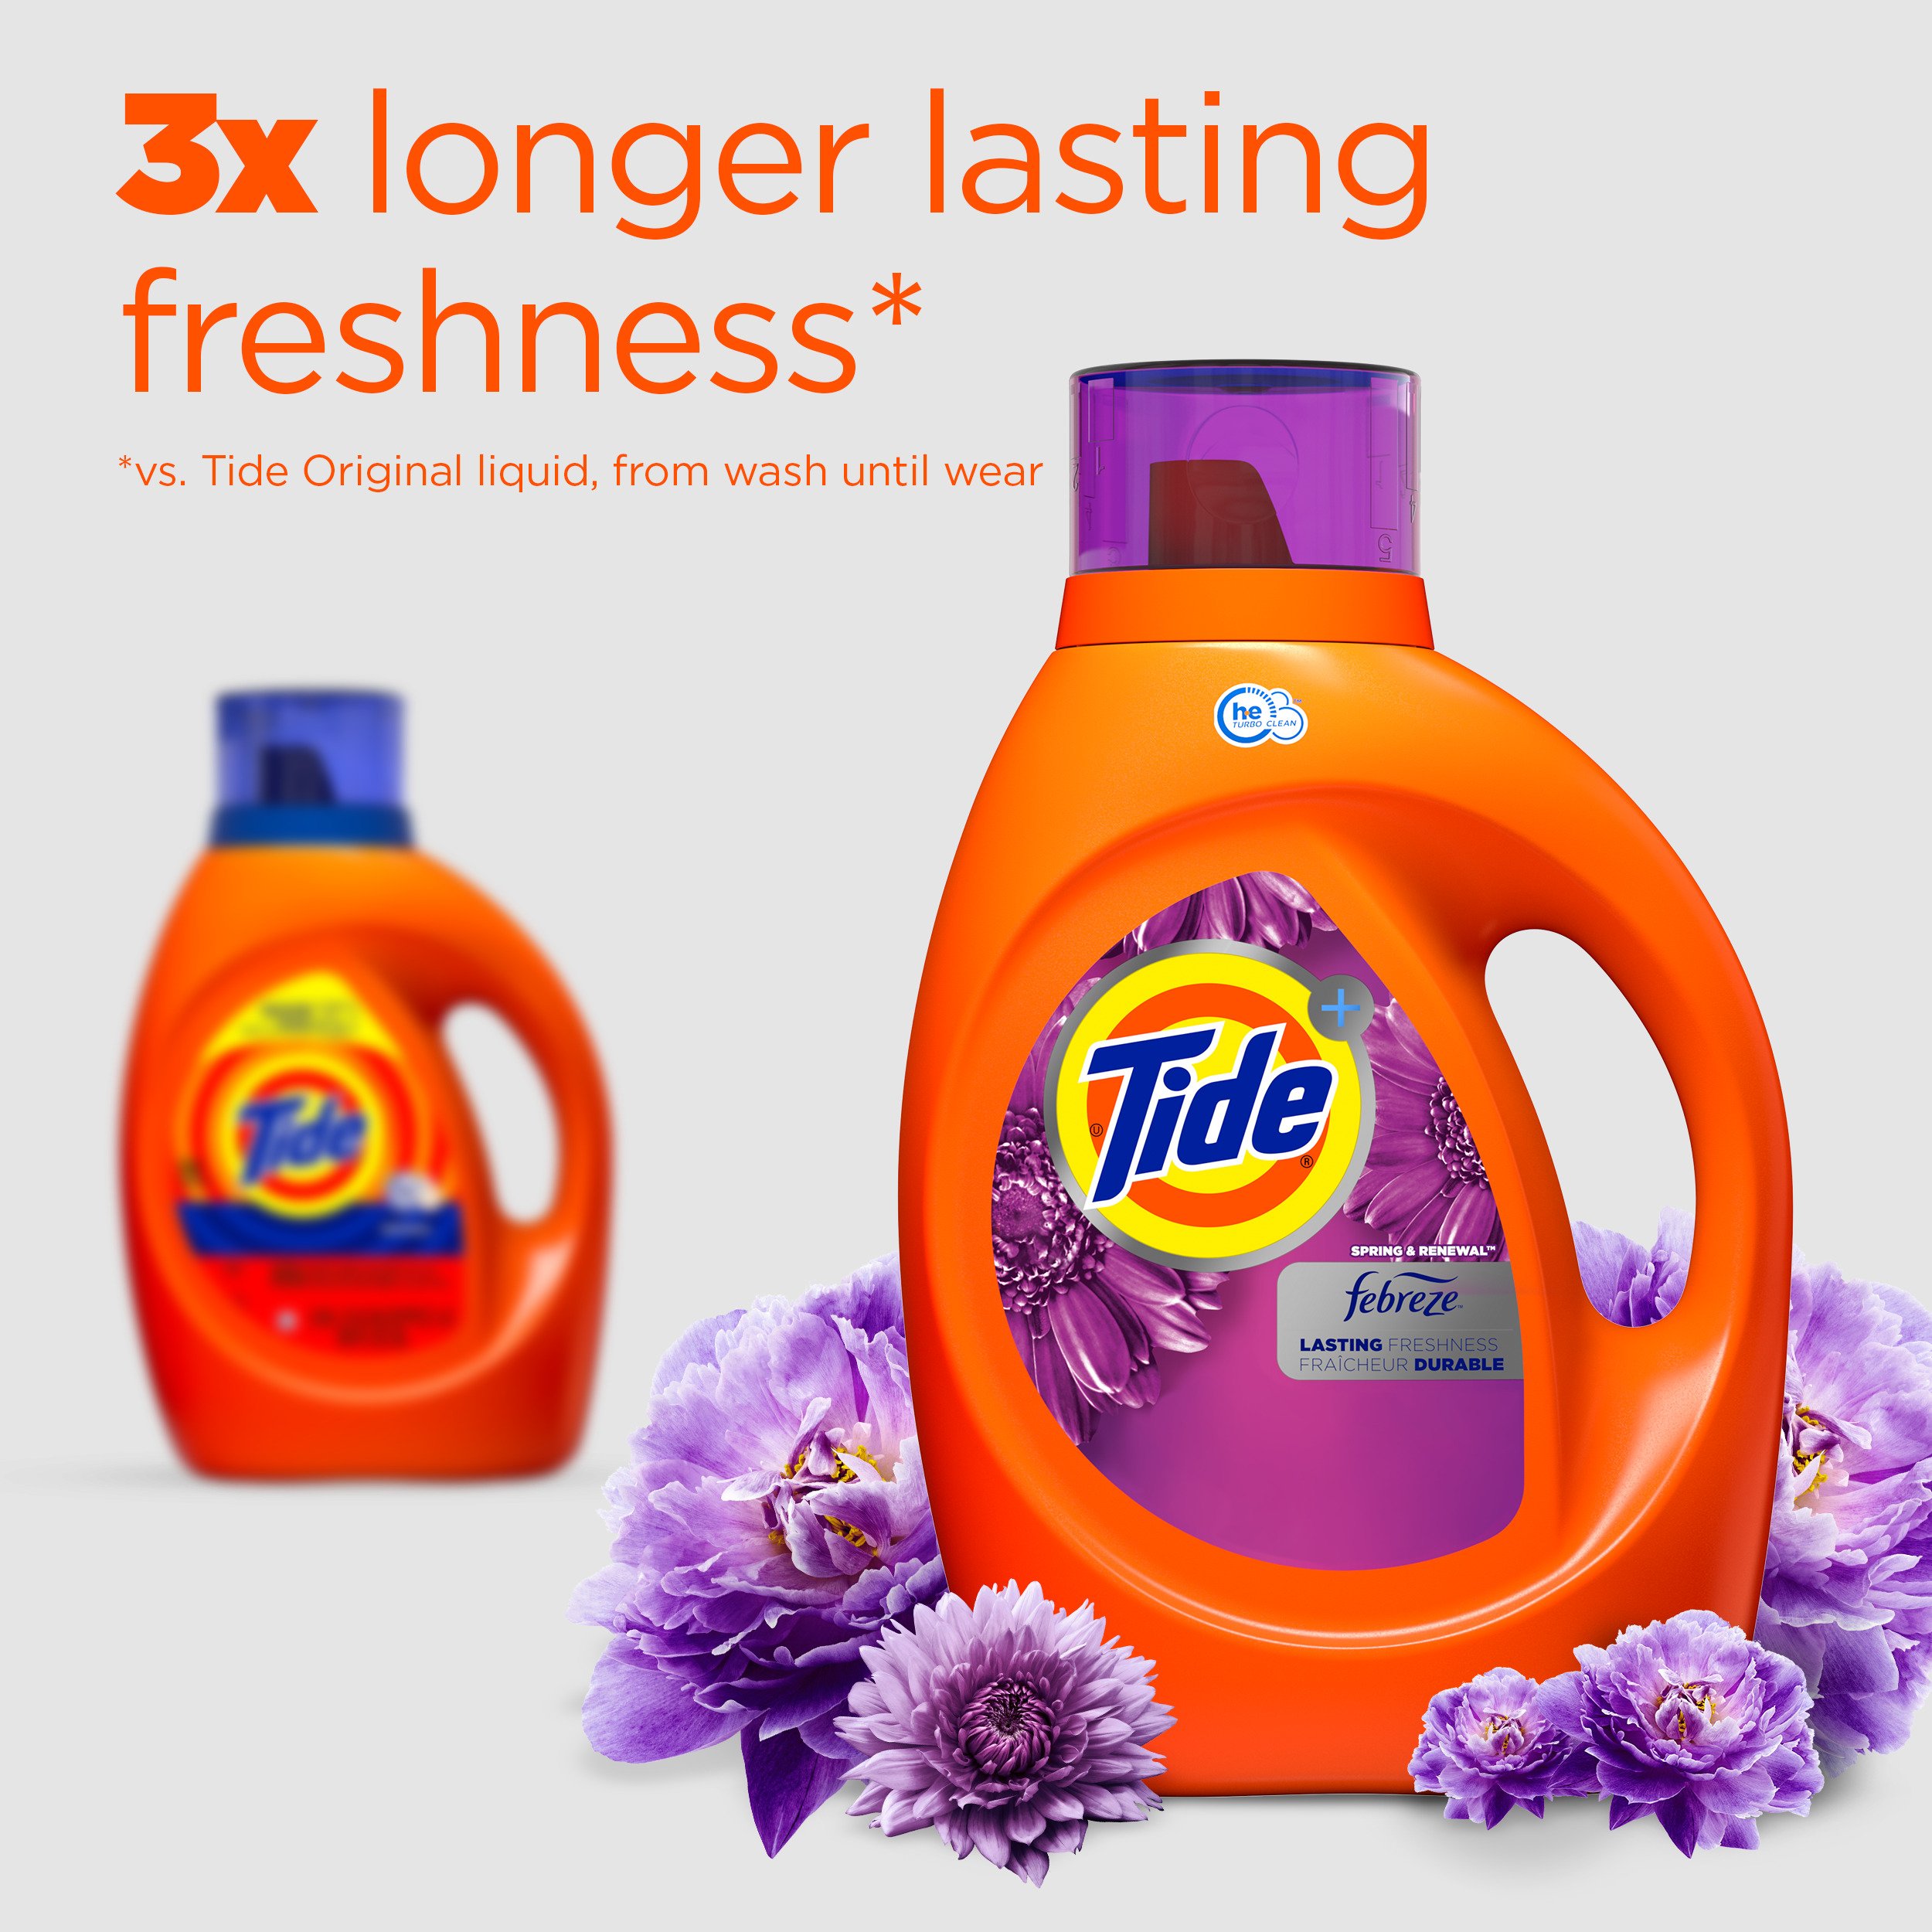 Tide Plus Downy April Fresh HE Liquid Laundry Detergent 29 Loads - Shop  Detergent at H-E-B